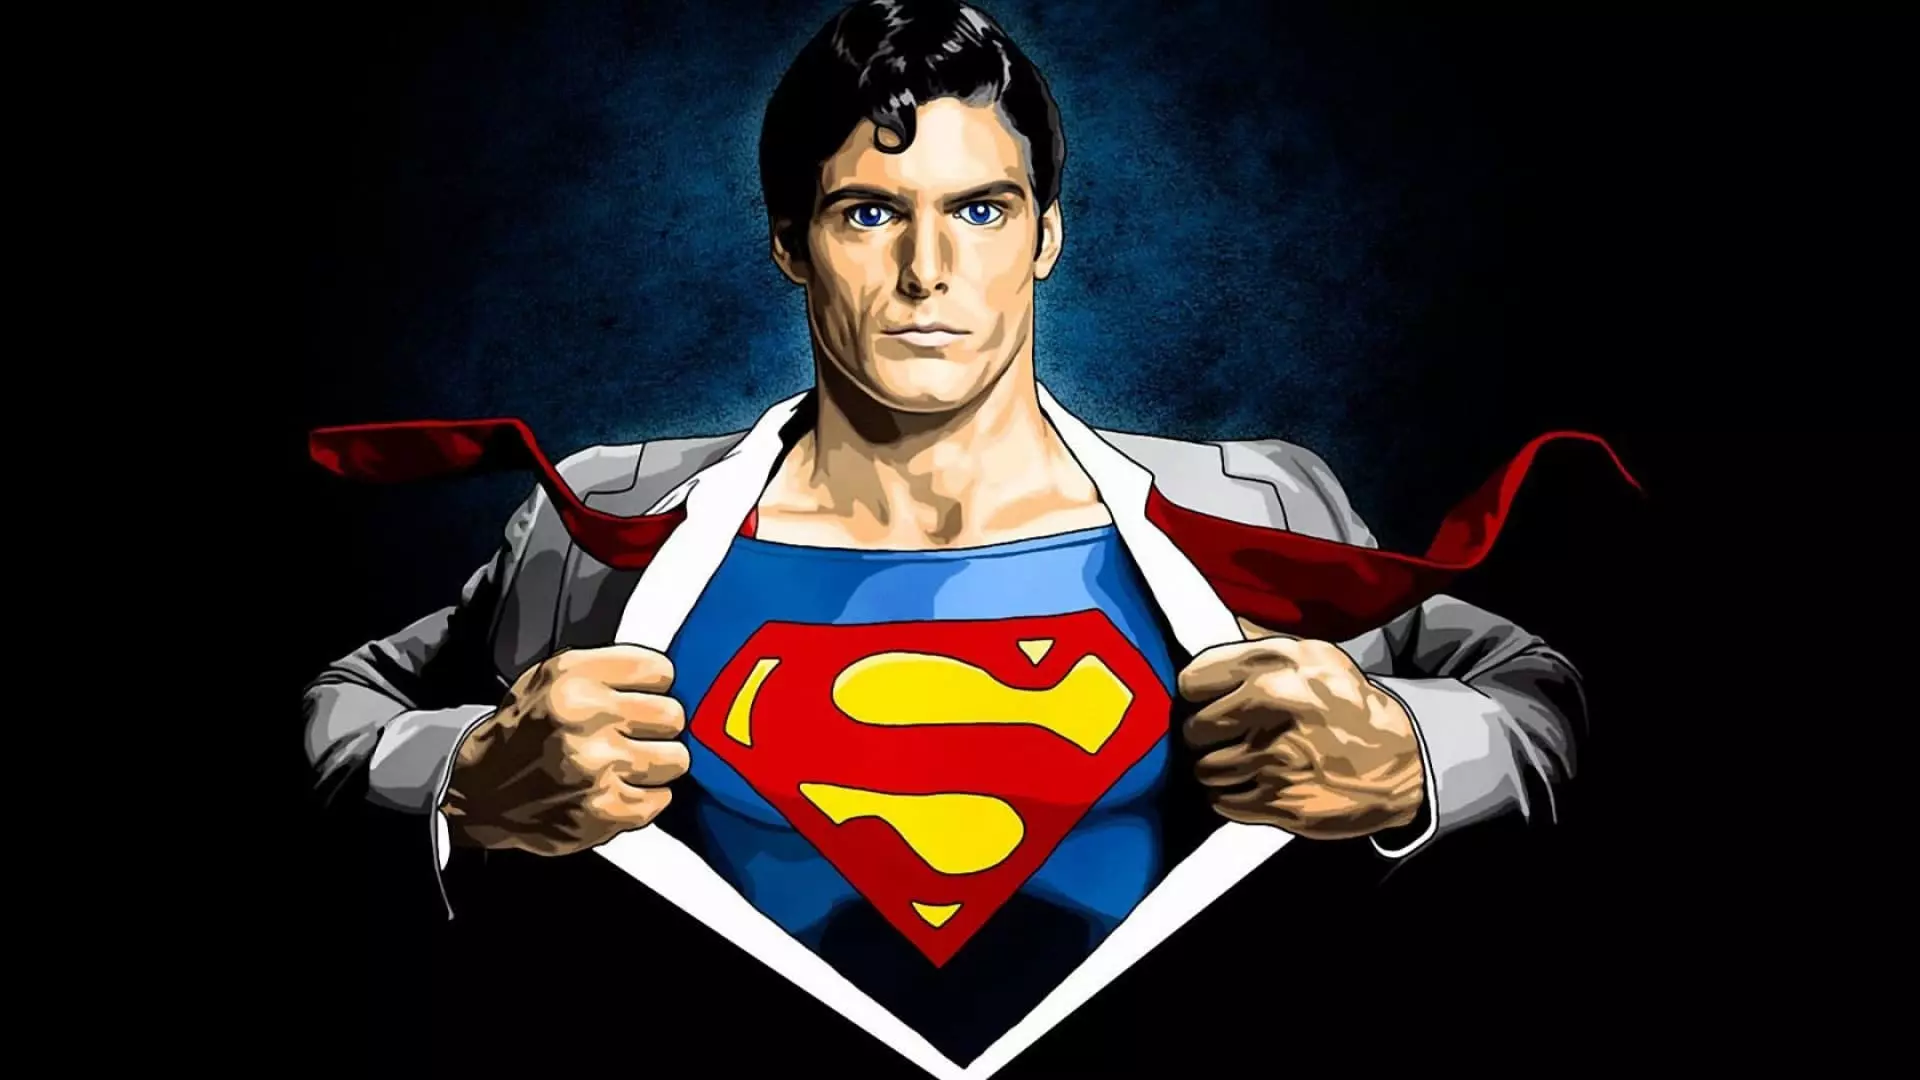 सुपरमॅन - इतिहास, फोटो, चित्रपट, कलाकार, कॉमिक्स